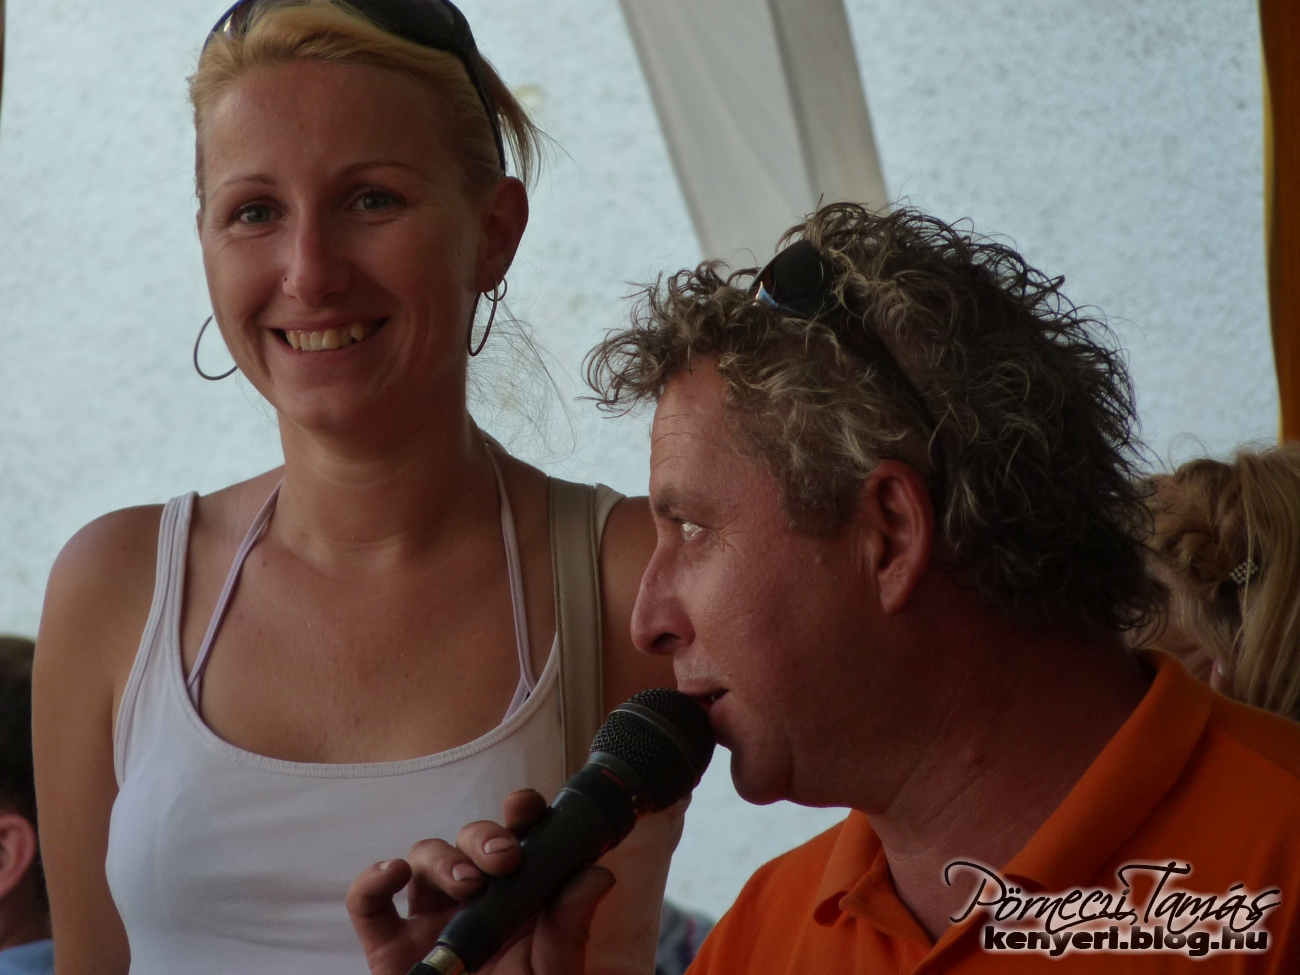 2012 - A bemondó Zsiga mellett egy ifjú hölgy mosolygott ebben az évben